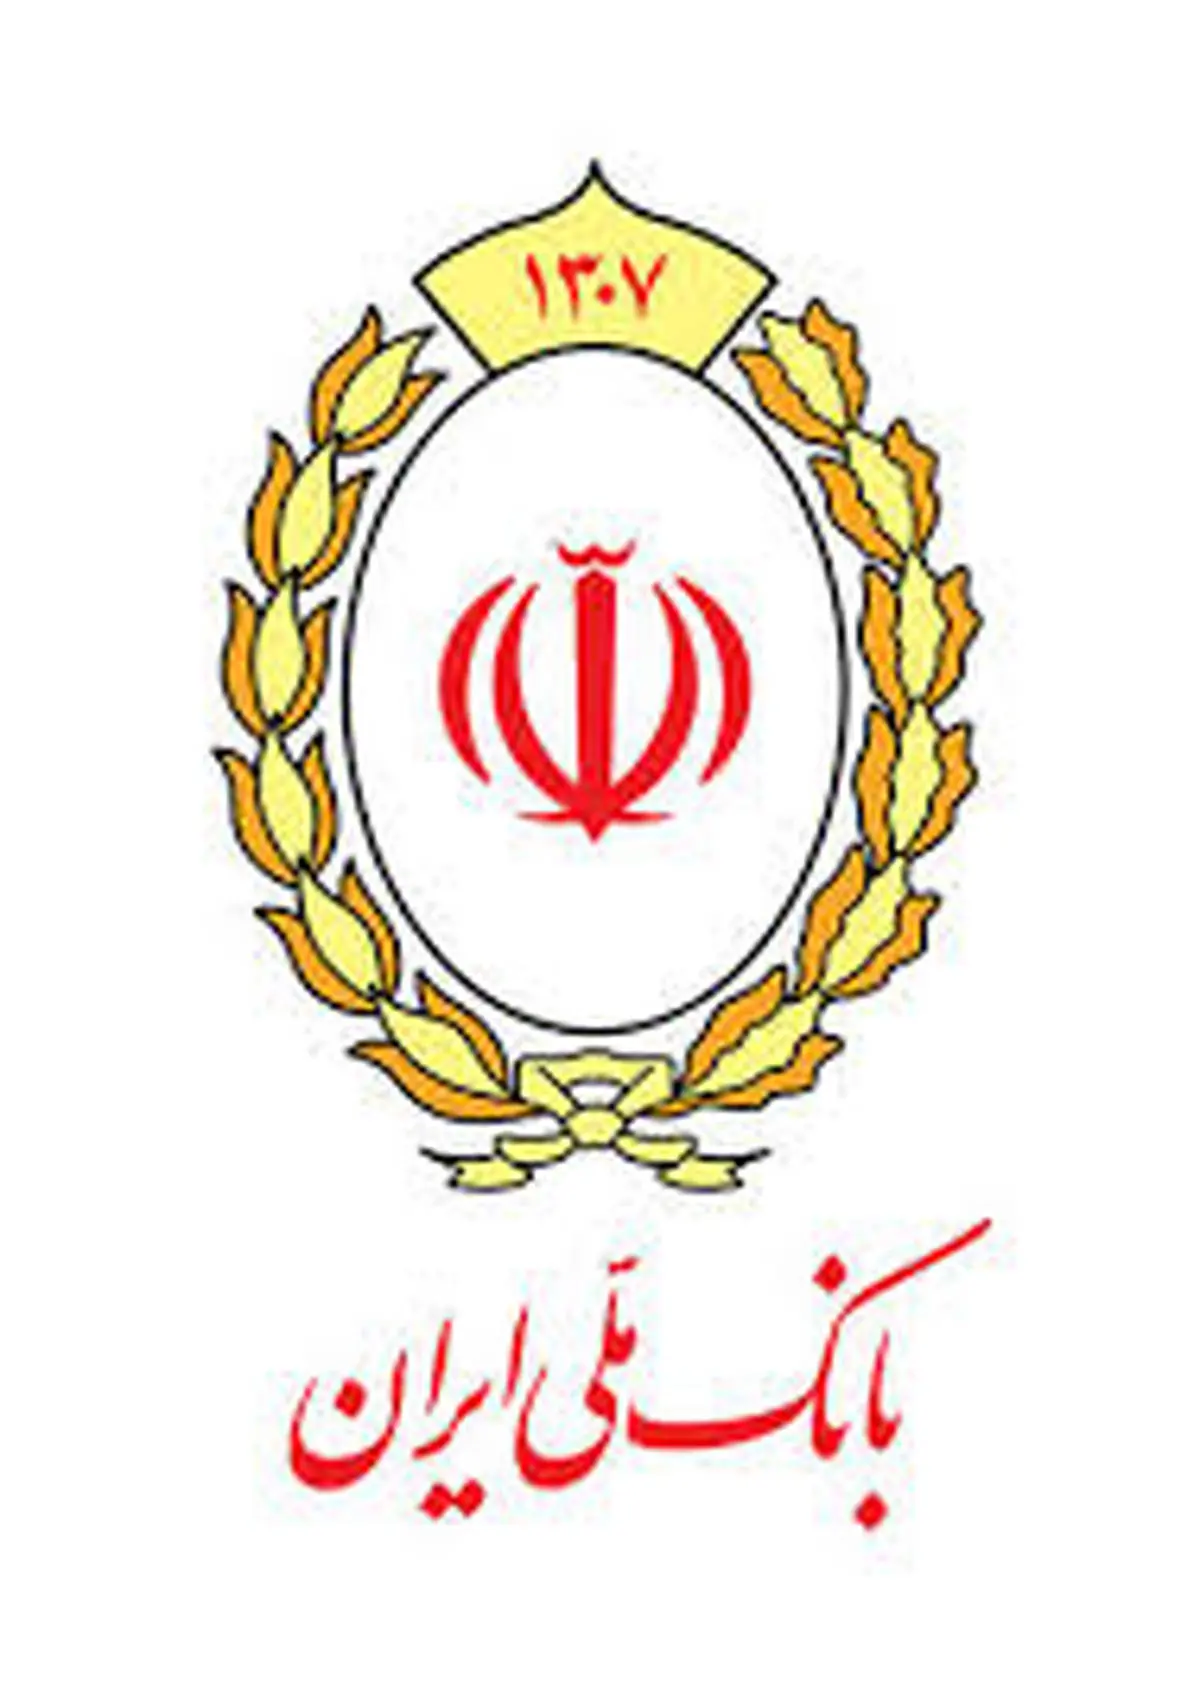 شمارش معکوس قرعه کشی مسابقه «موجودی کارت بانکی» بانک ملی ایران

